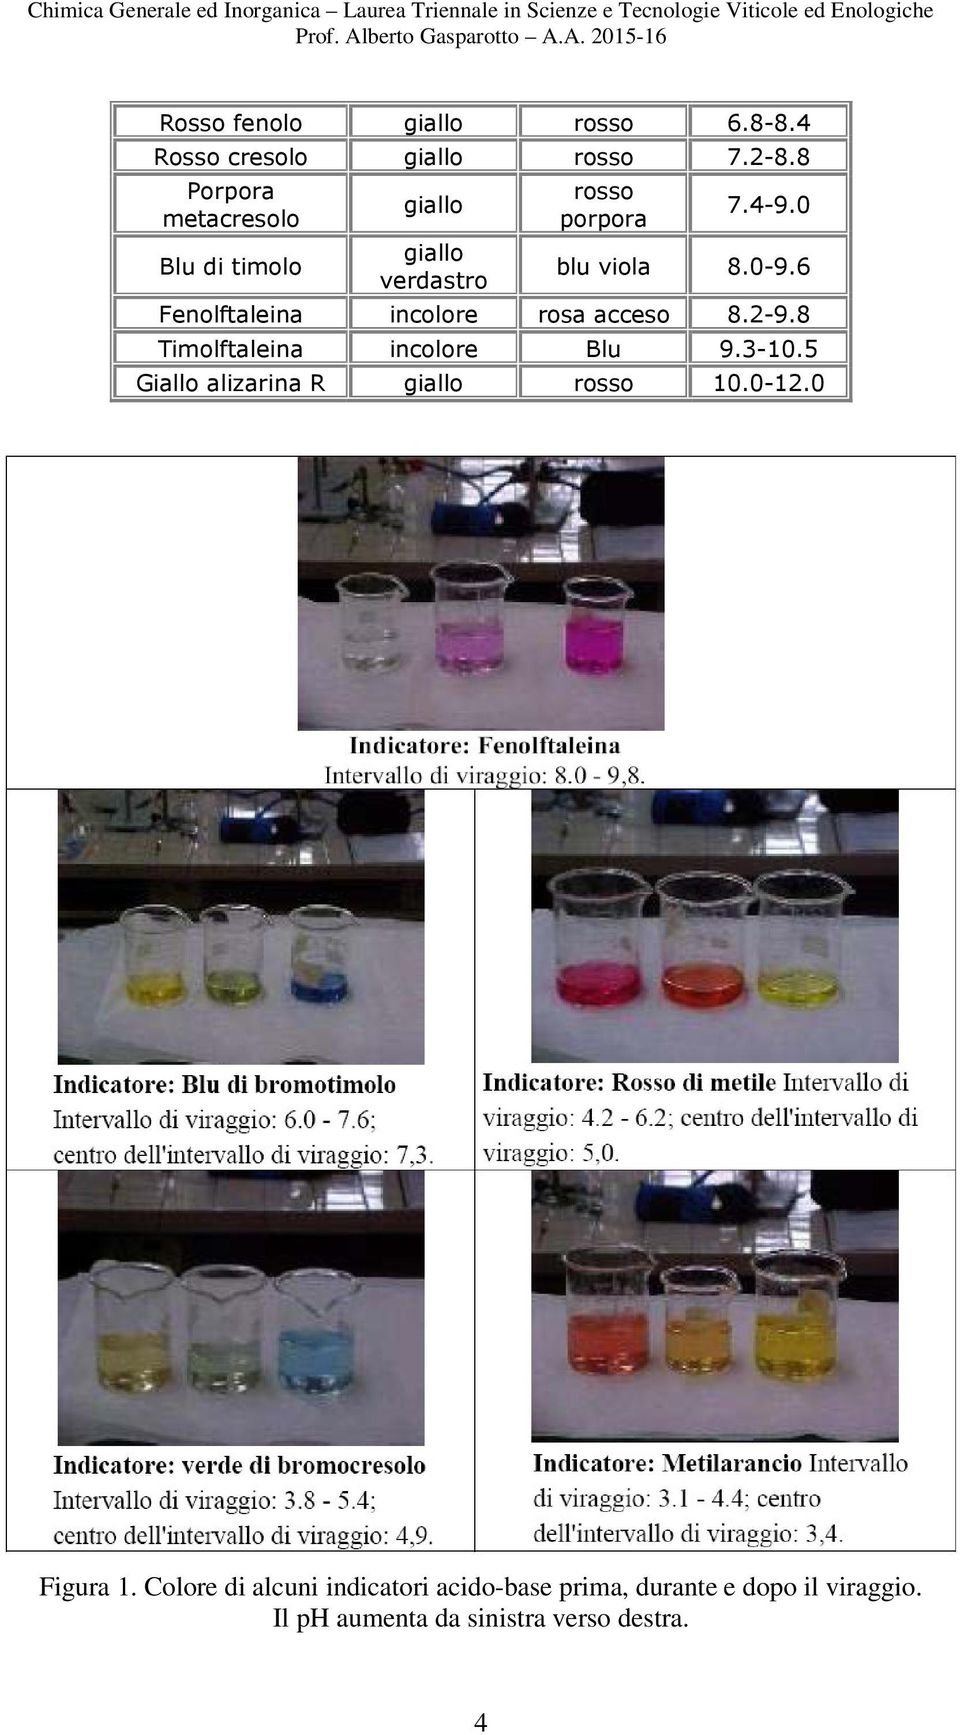 6 Fenolftaleina incolore rosa acceso 8.2-9.8 Timolftaleina incolore Blu 9.3-10.